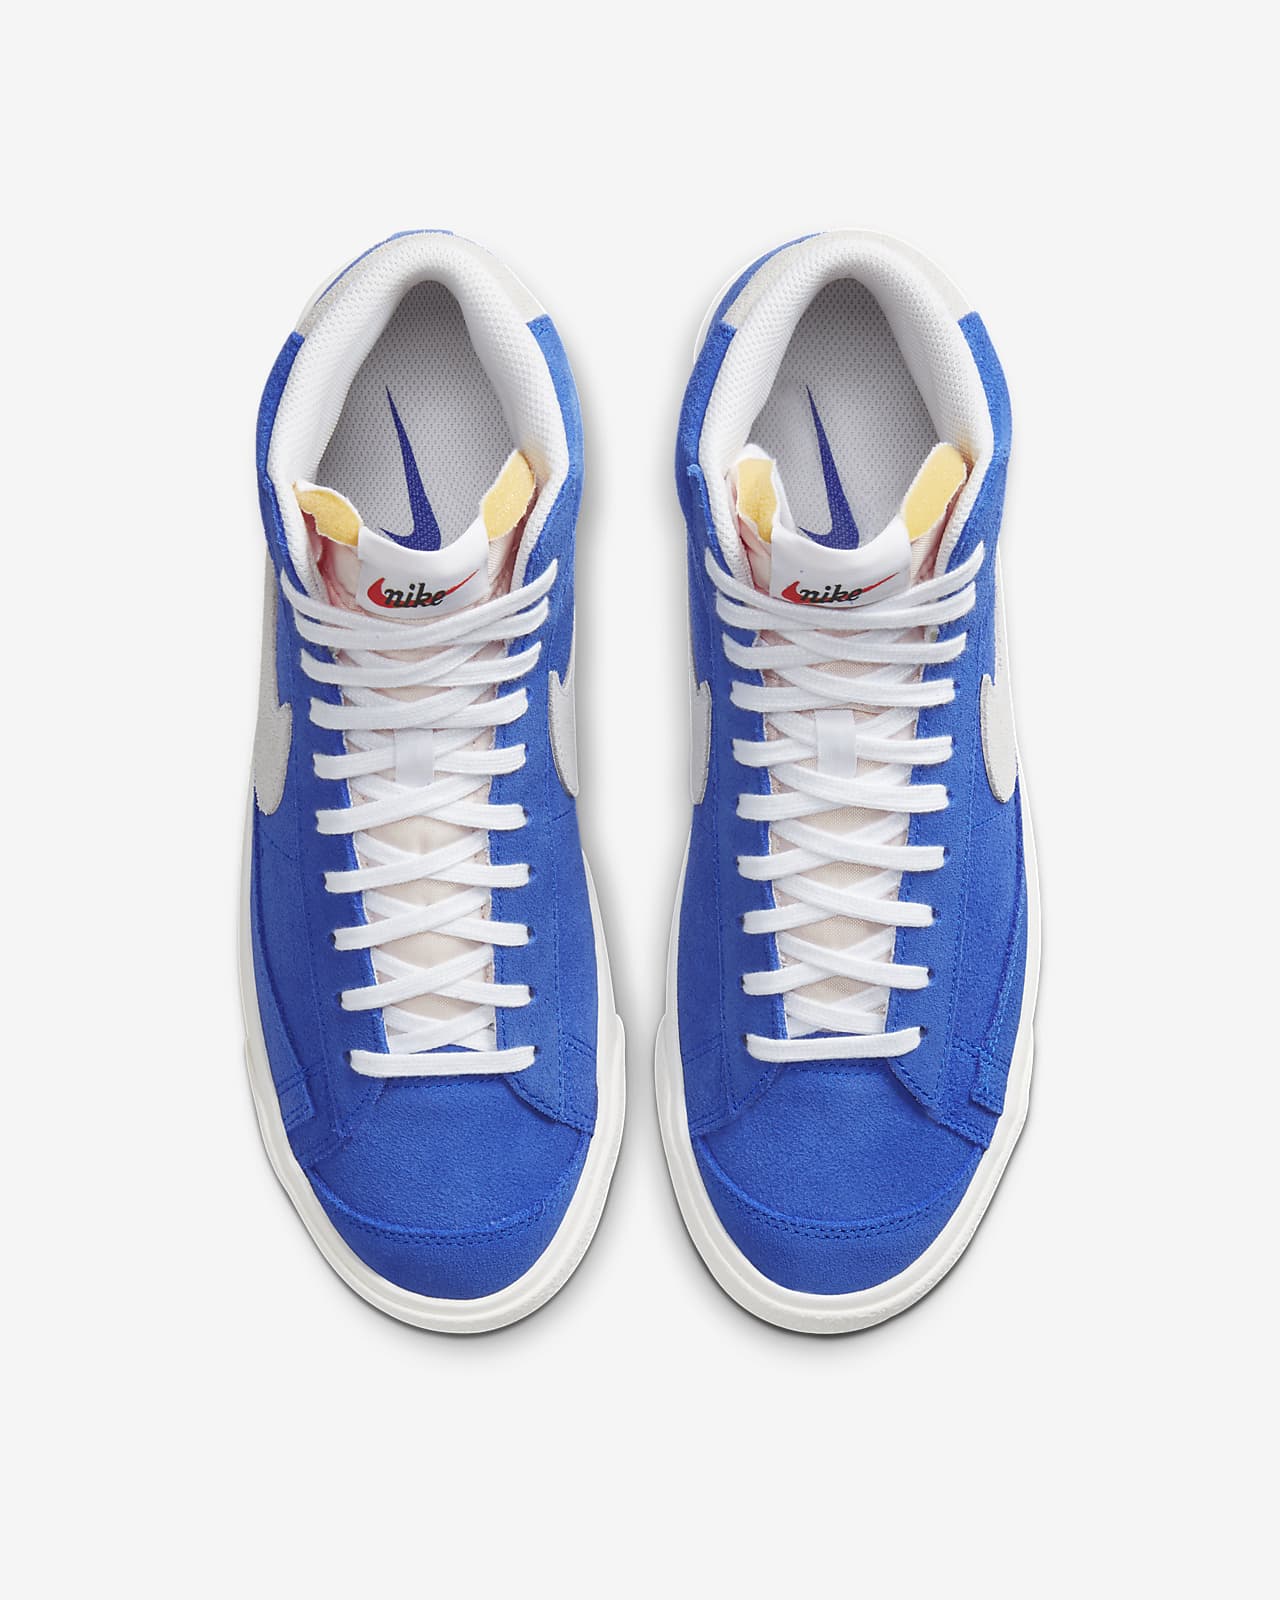 sneakers nike blue